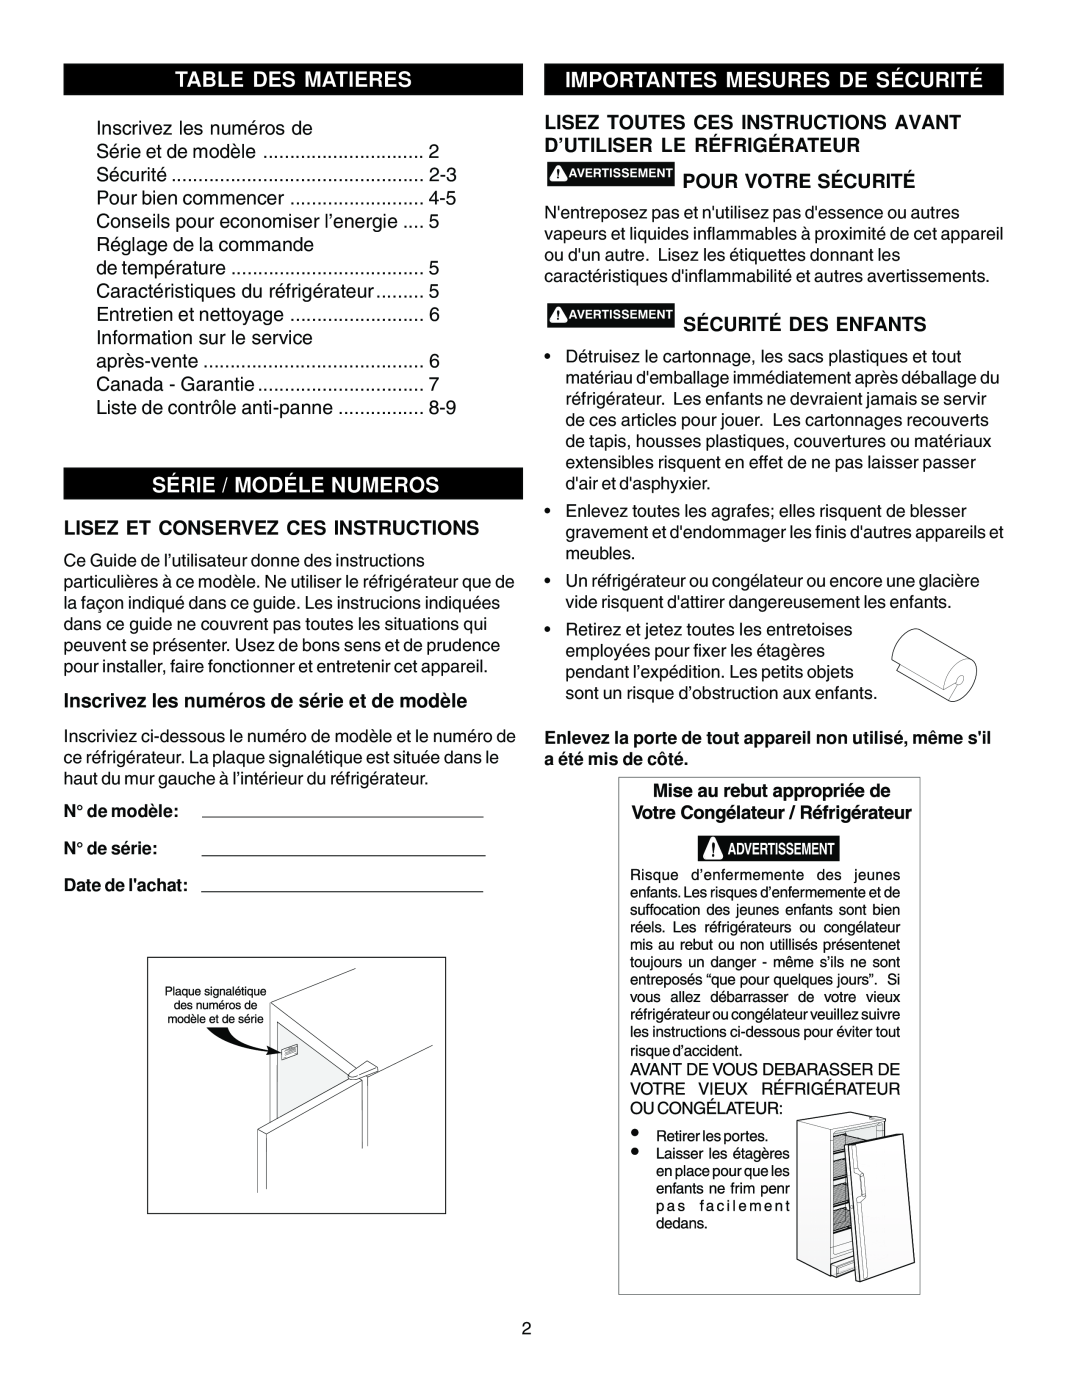 Electrolux - Gibson 216771000 manual Table Des Matieres, Importantes Mesures De Sécurité, Série / Modéle Numeros 